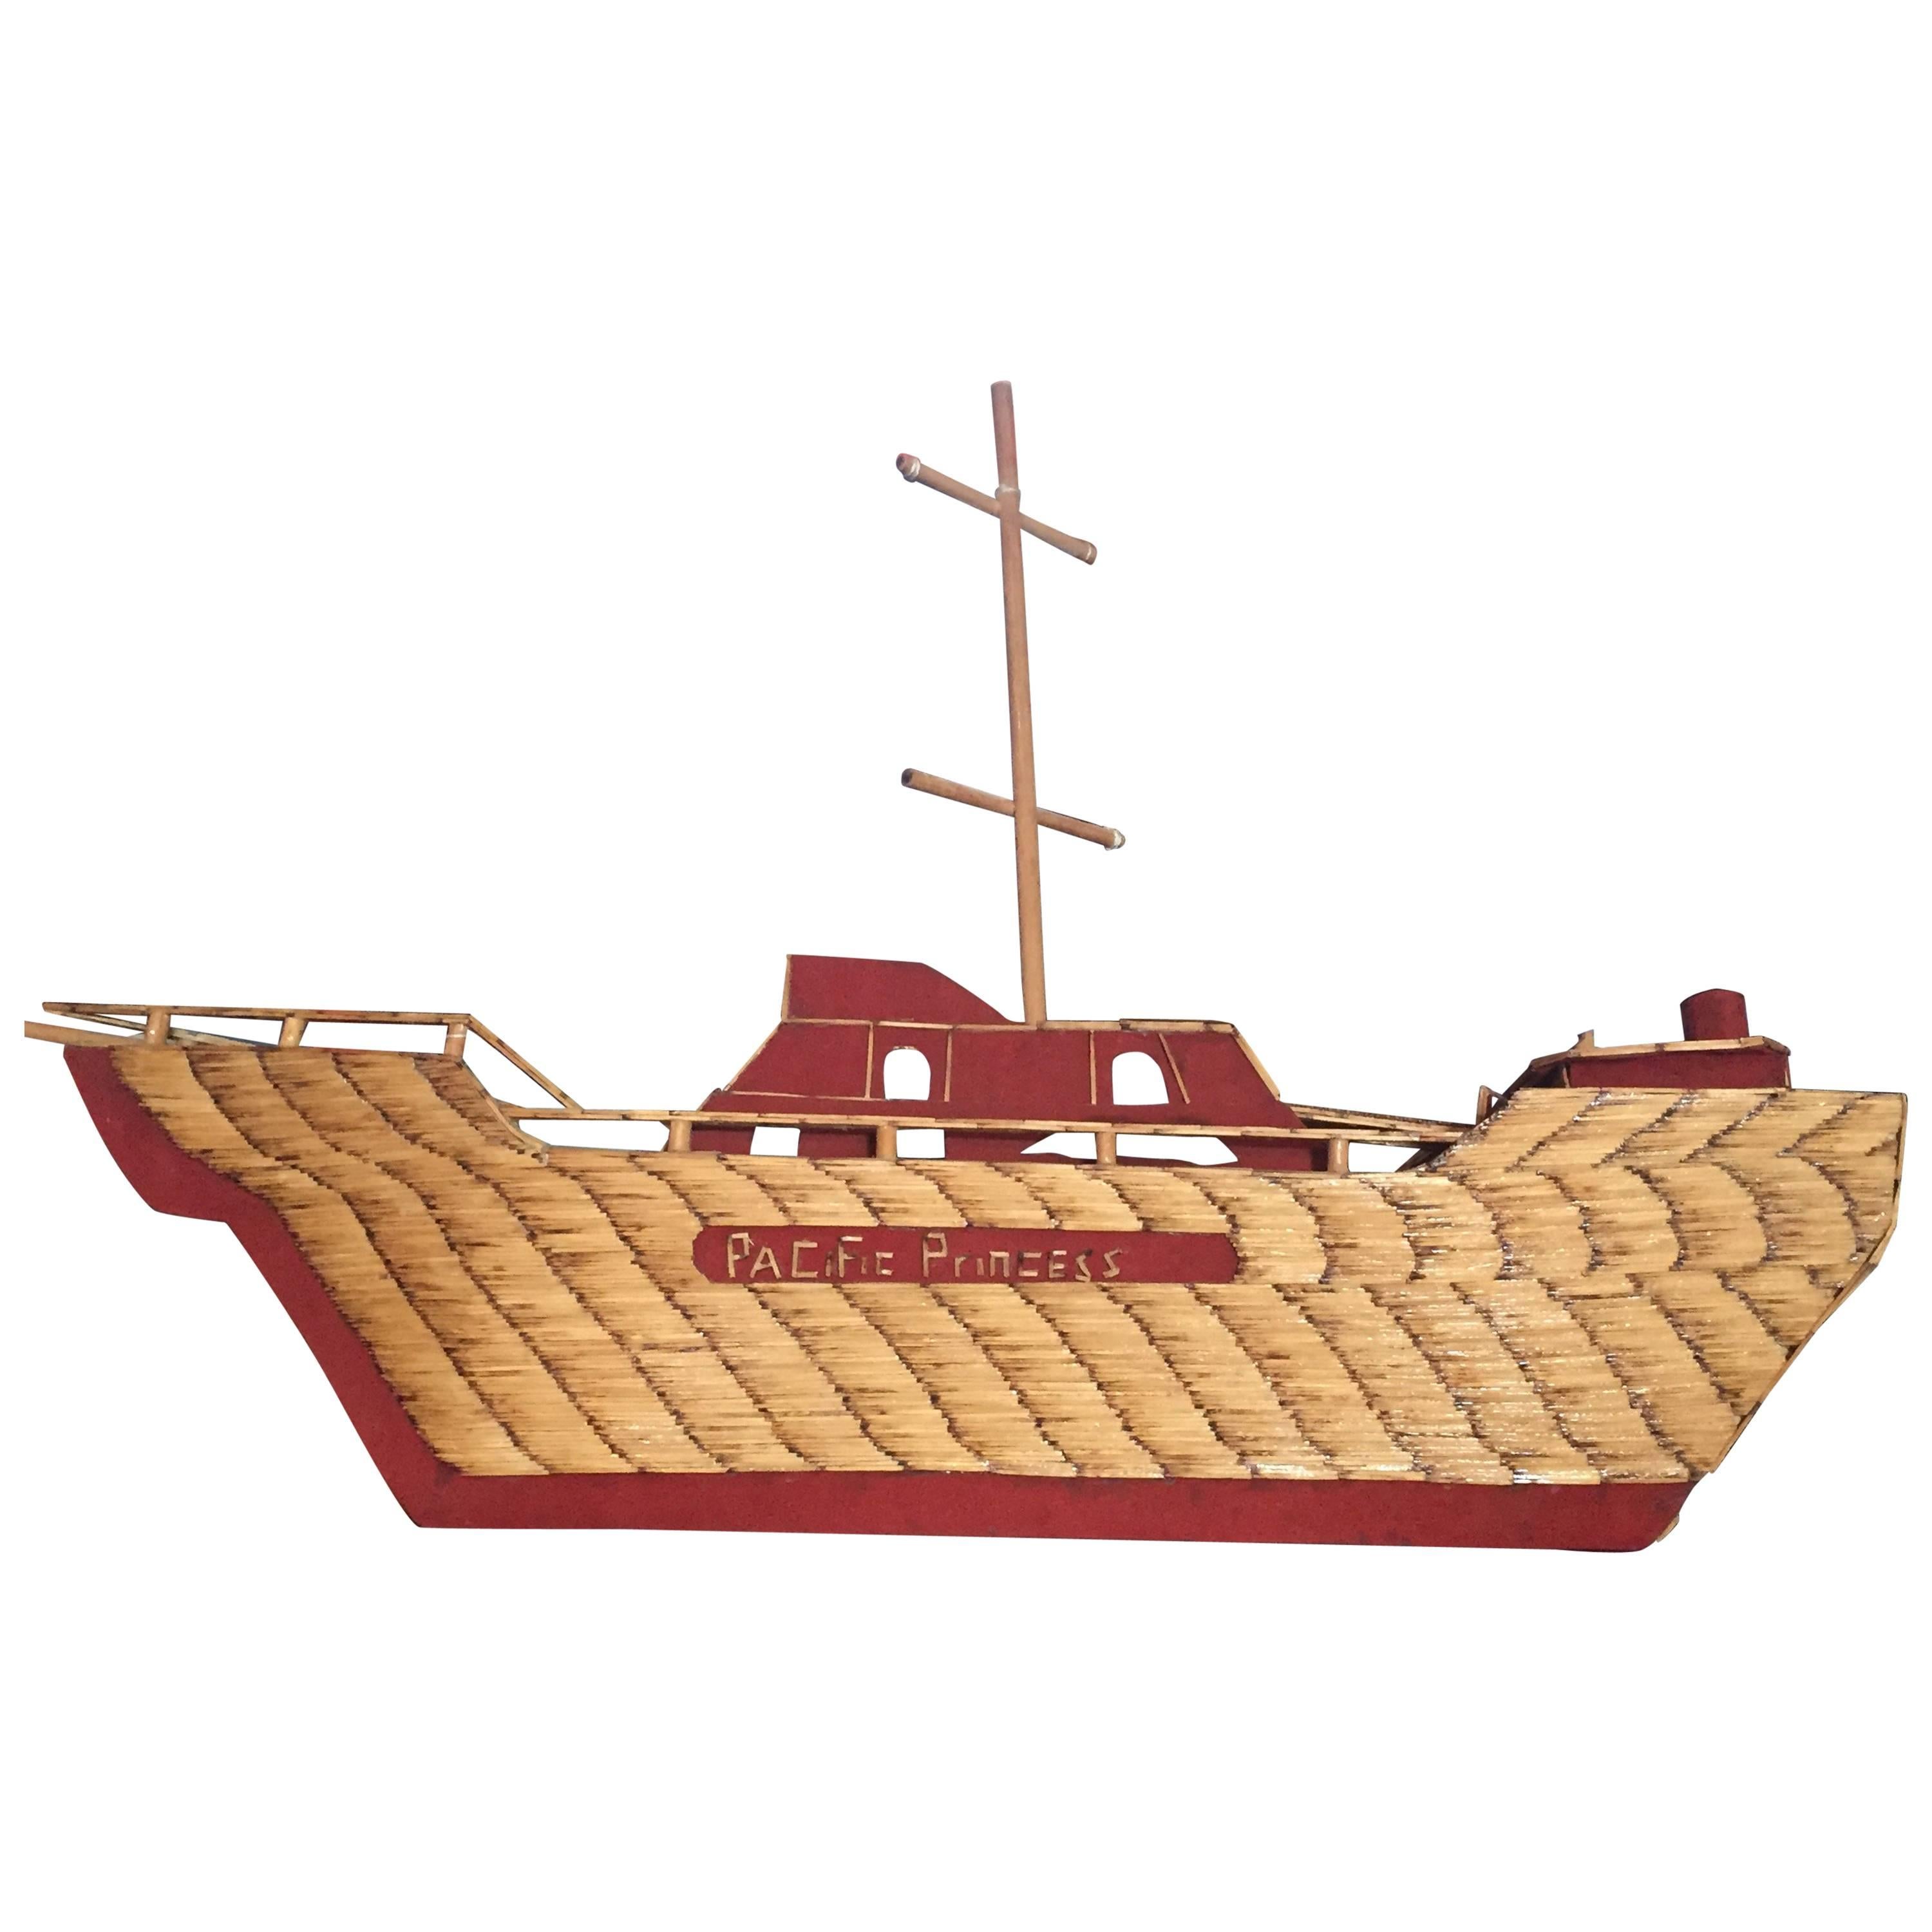 Folk Art Ship from World War-II For Sale